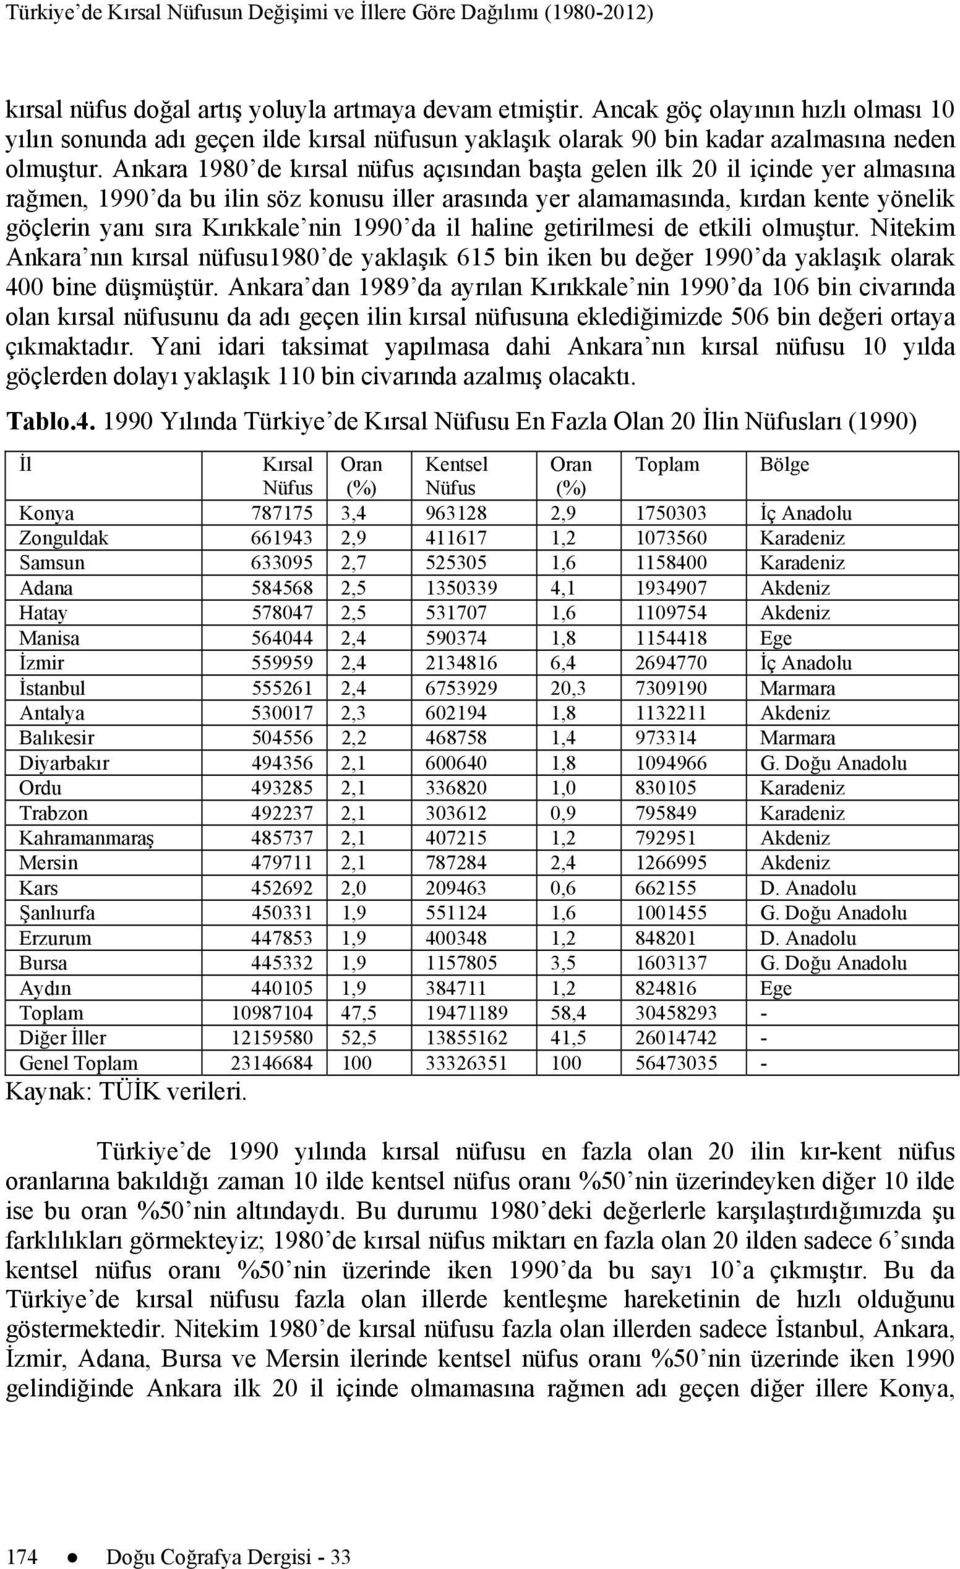 Ankara 1980 de kırsal nüfus açısından başta gelen ilk 20 il içinde yer almasına rağmen, 1990 da bu ilin söz konusu iller arasında yer alamamasında, kırdan kente yönelik göçlerin yanı sıra Kırıkkale